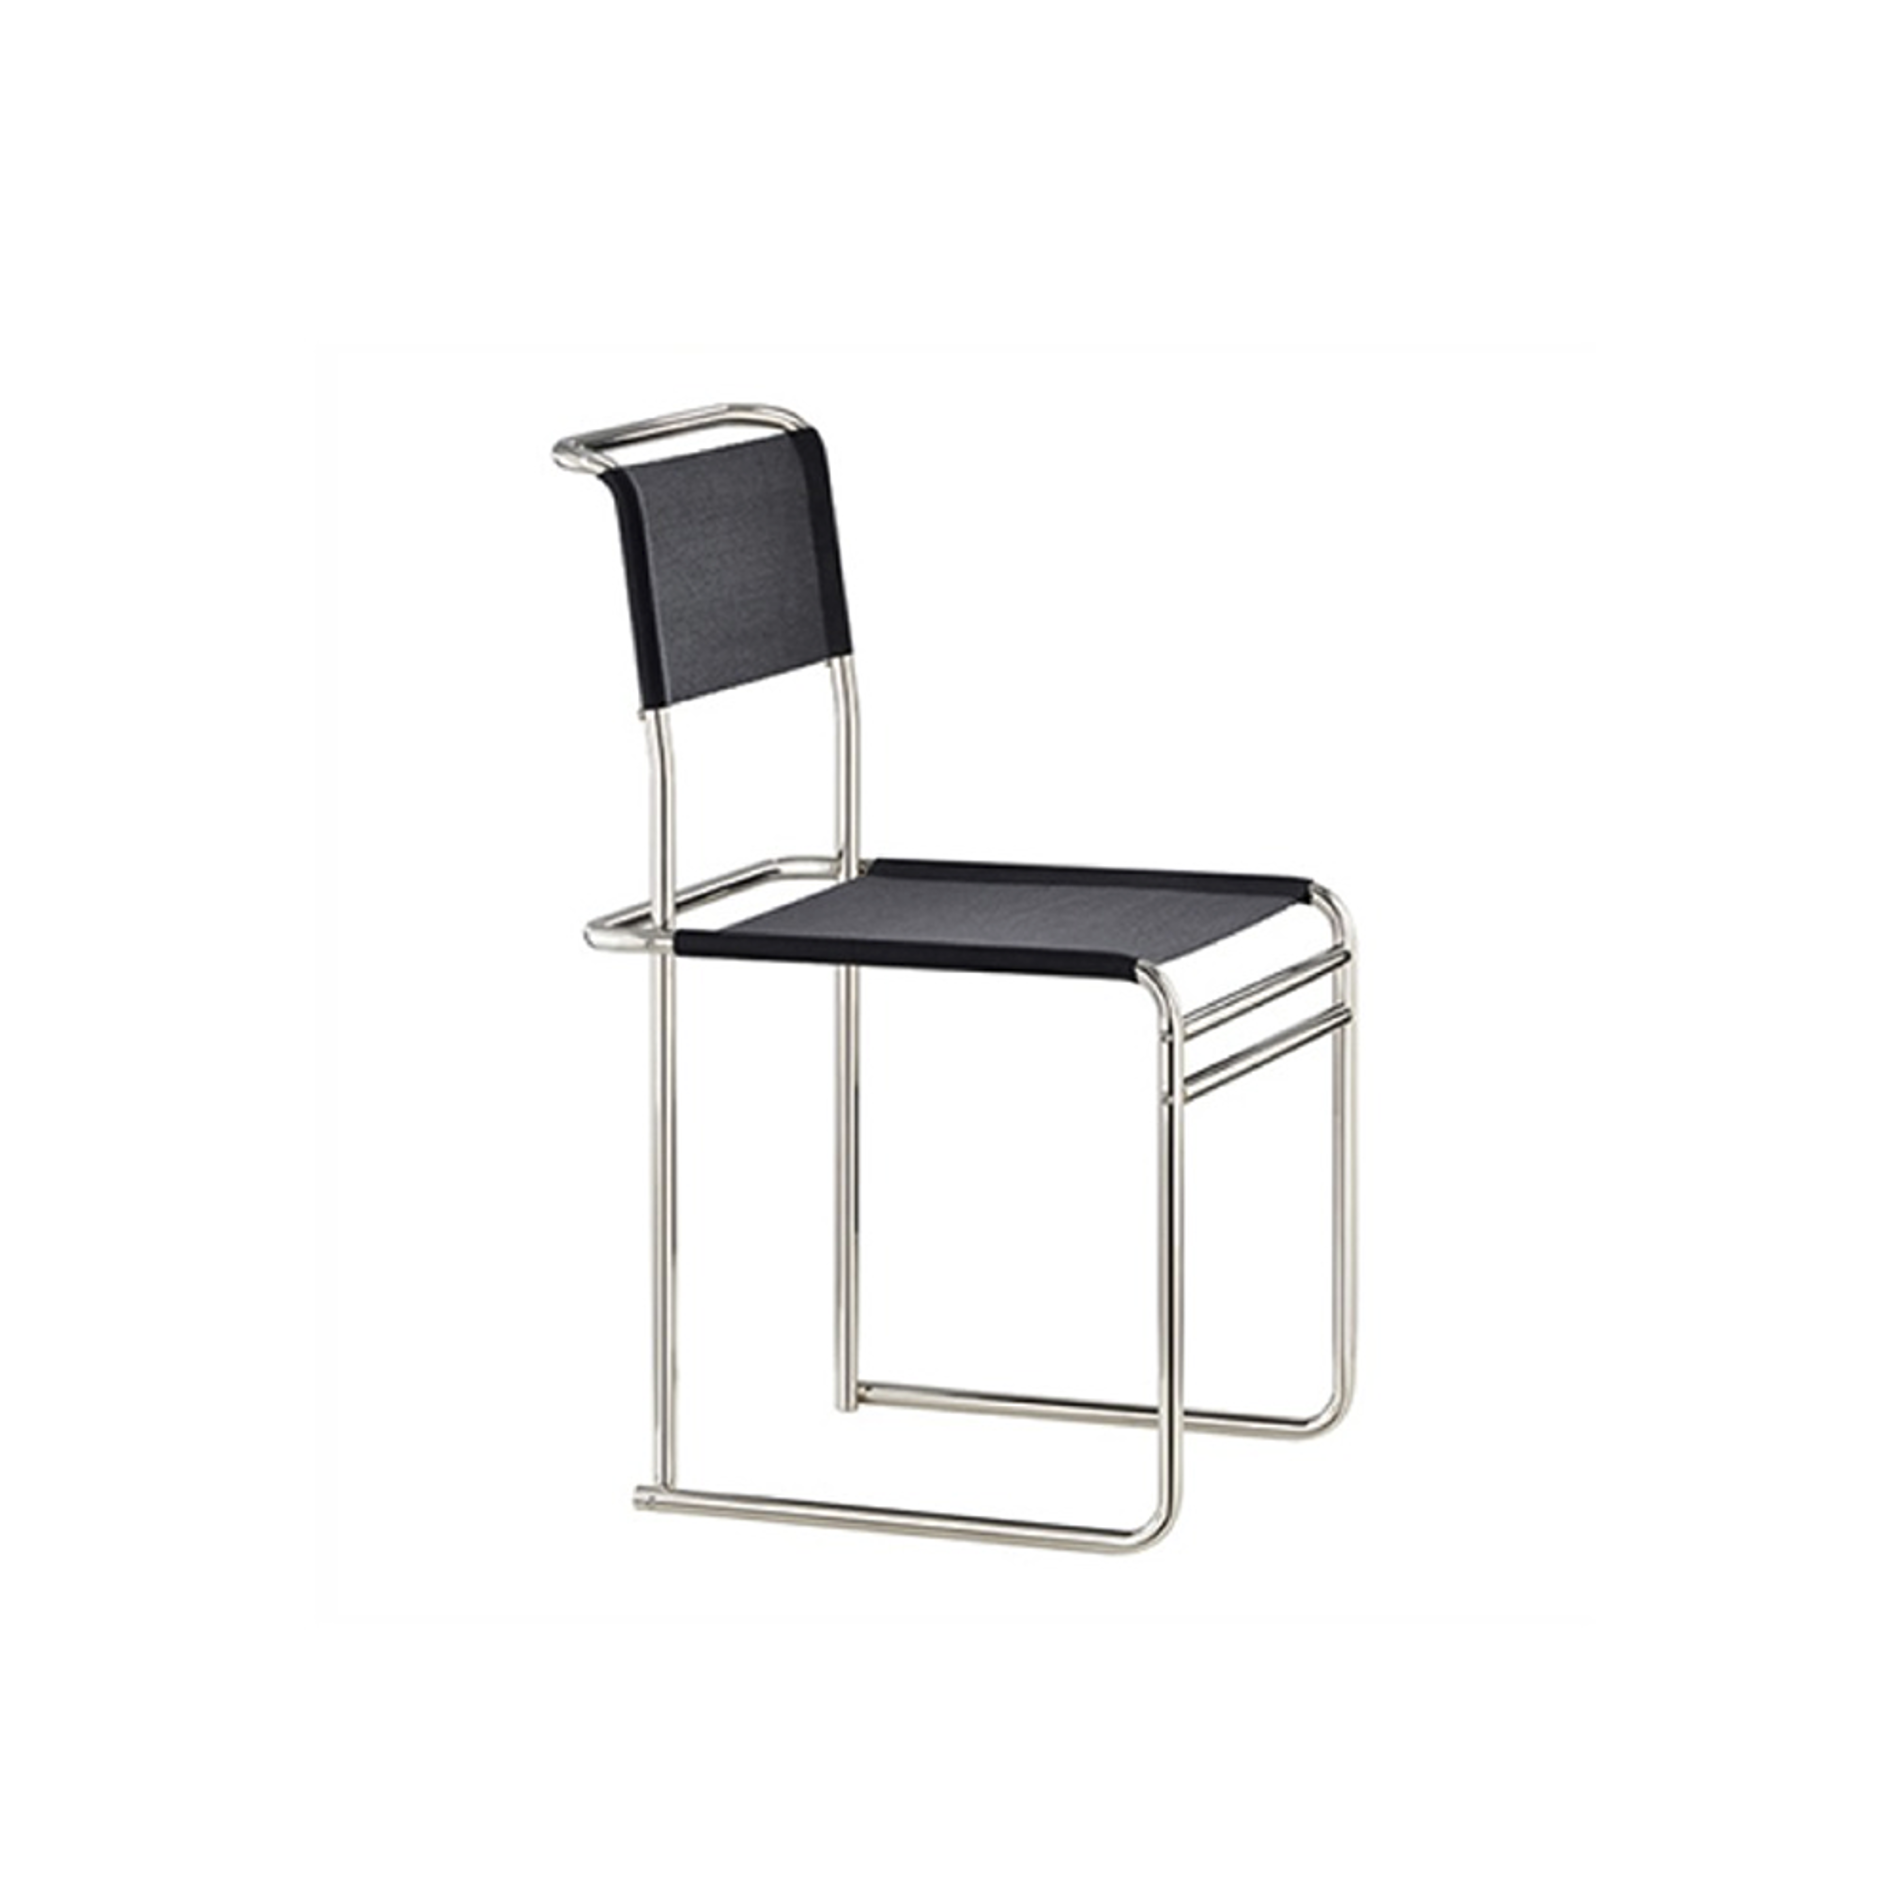 TECTA B40 Breuer Chair - Bauhaus Strap / Black